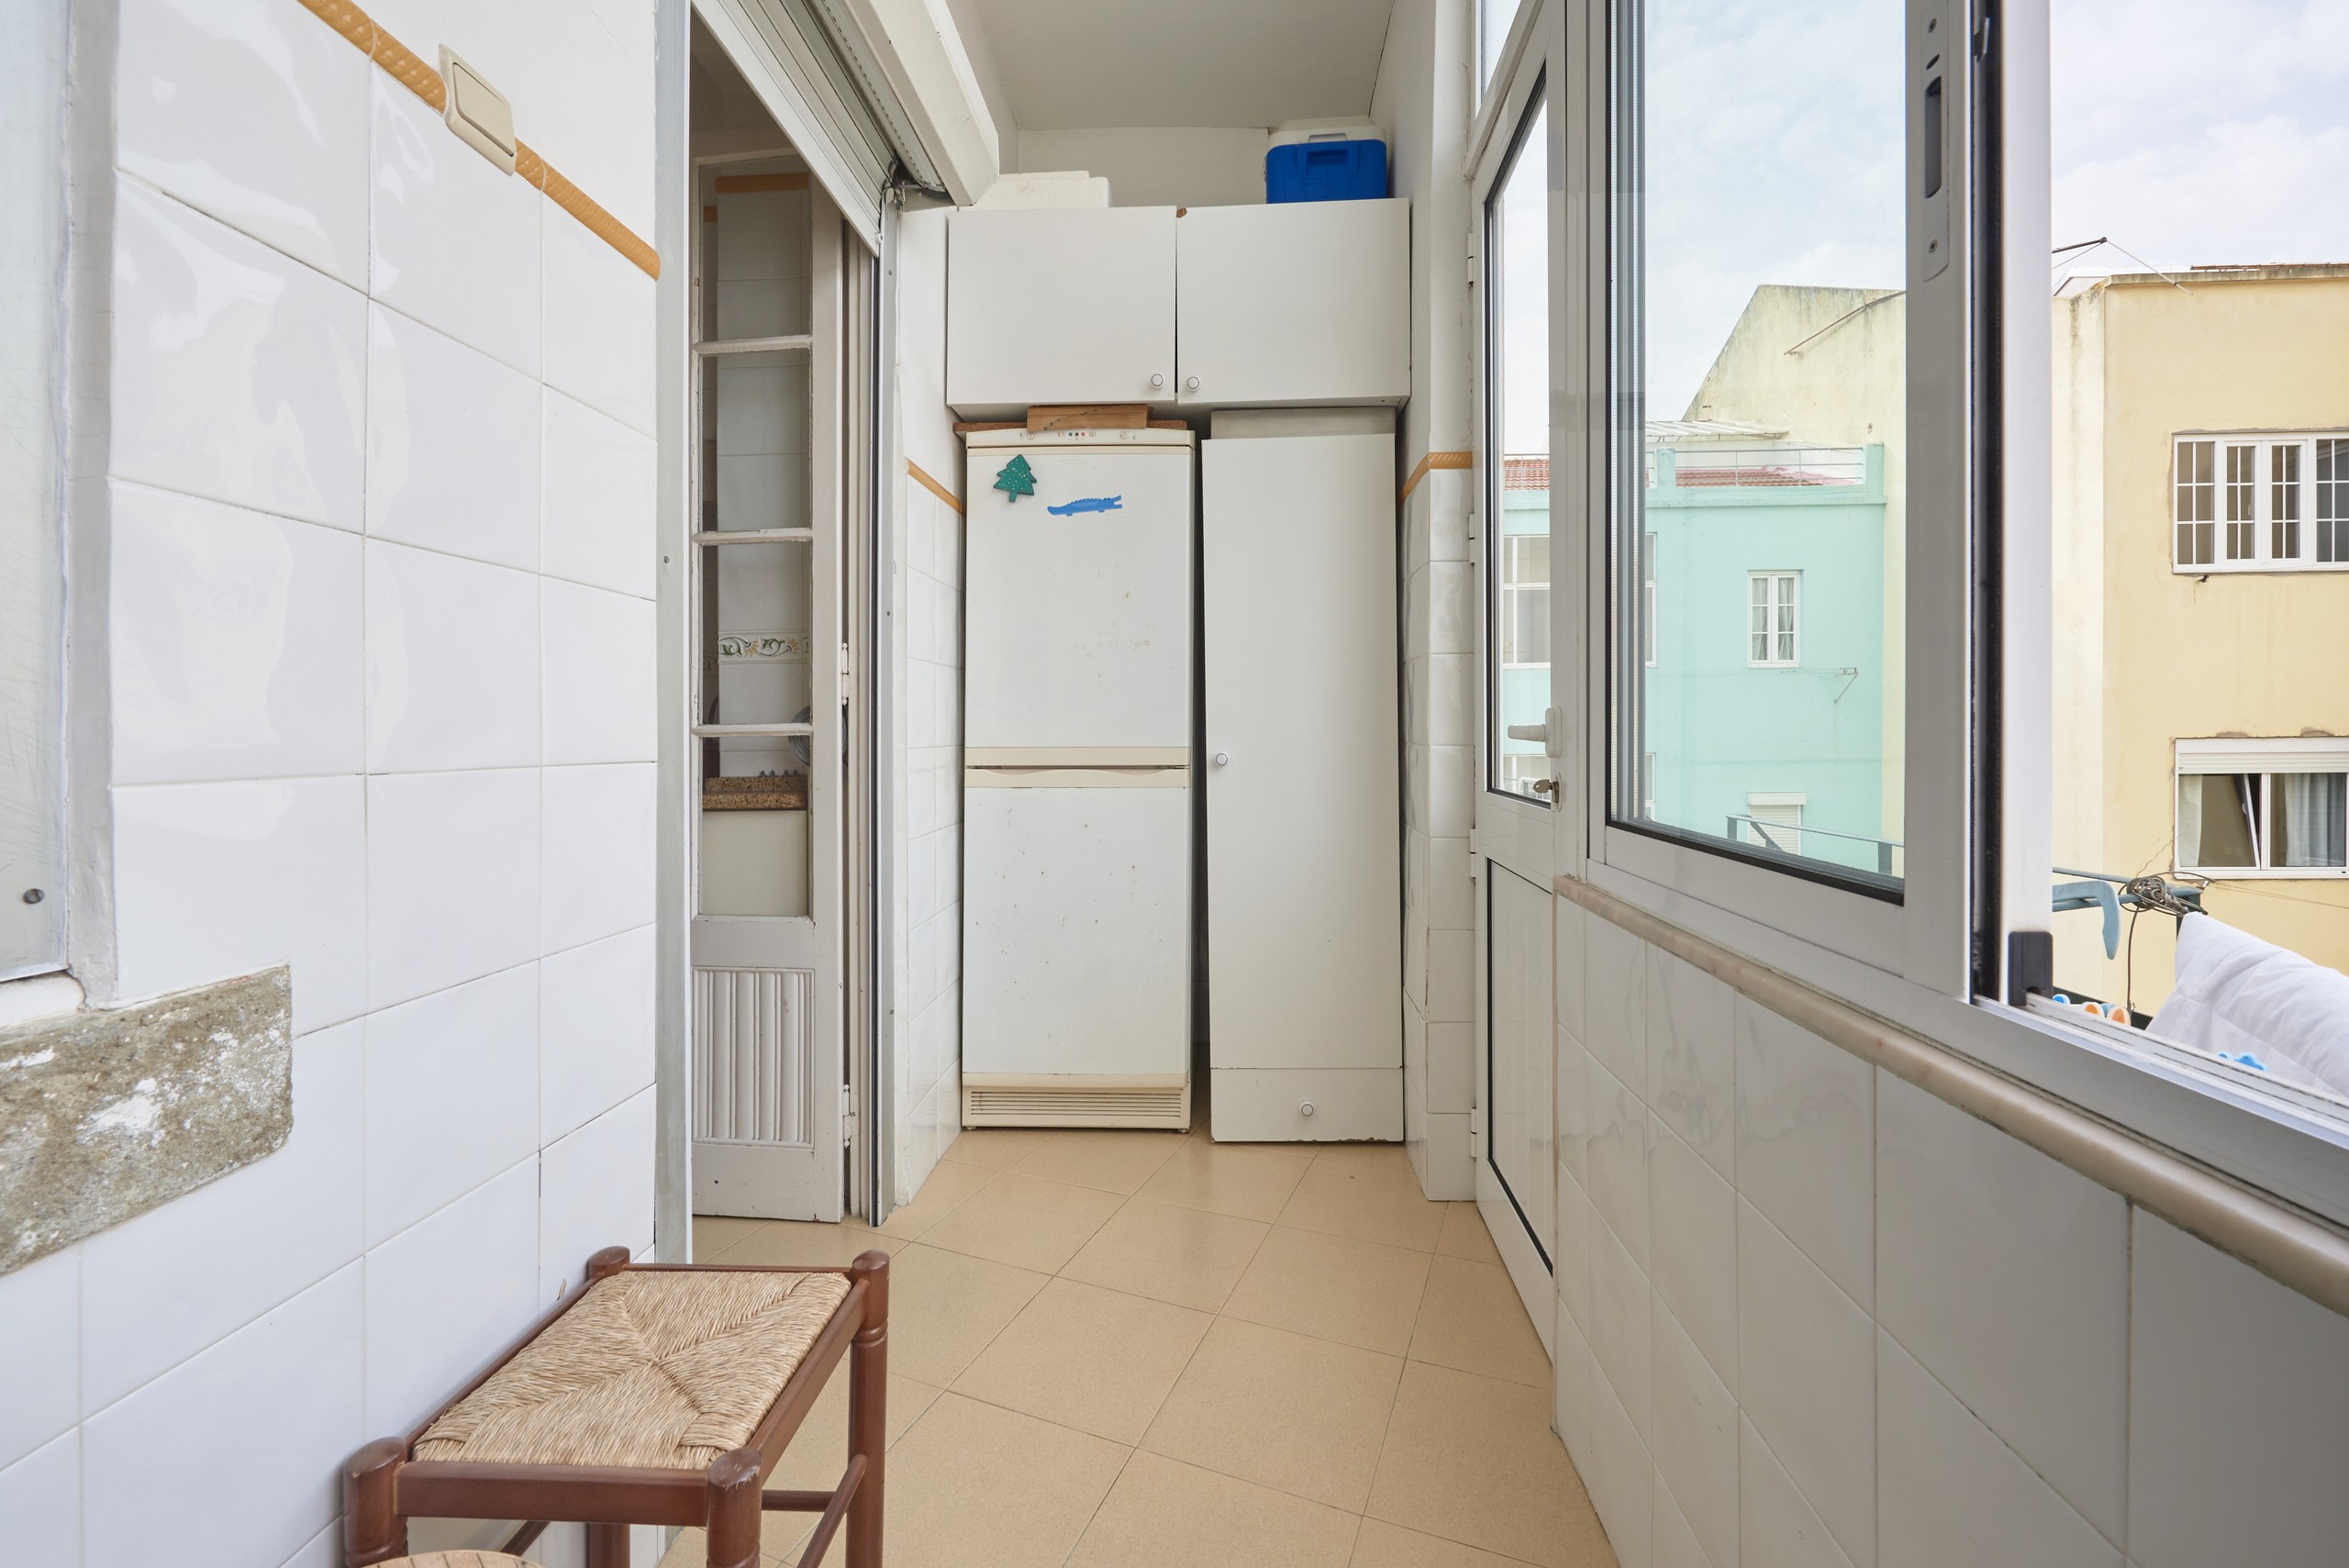 Rent Room Lisbon – Campo de Ourique 33# – Laundry Room